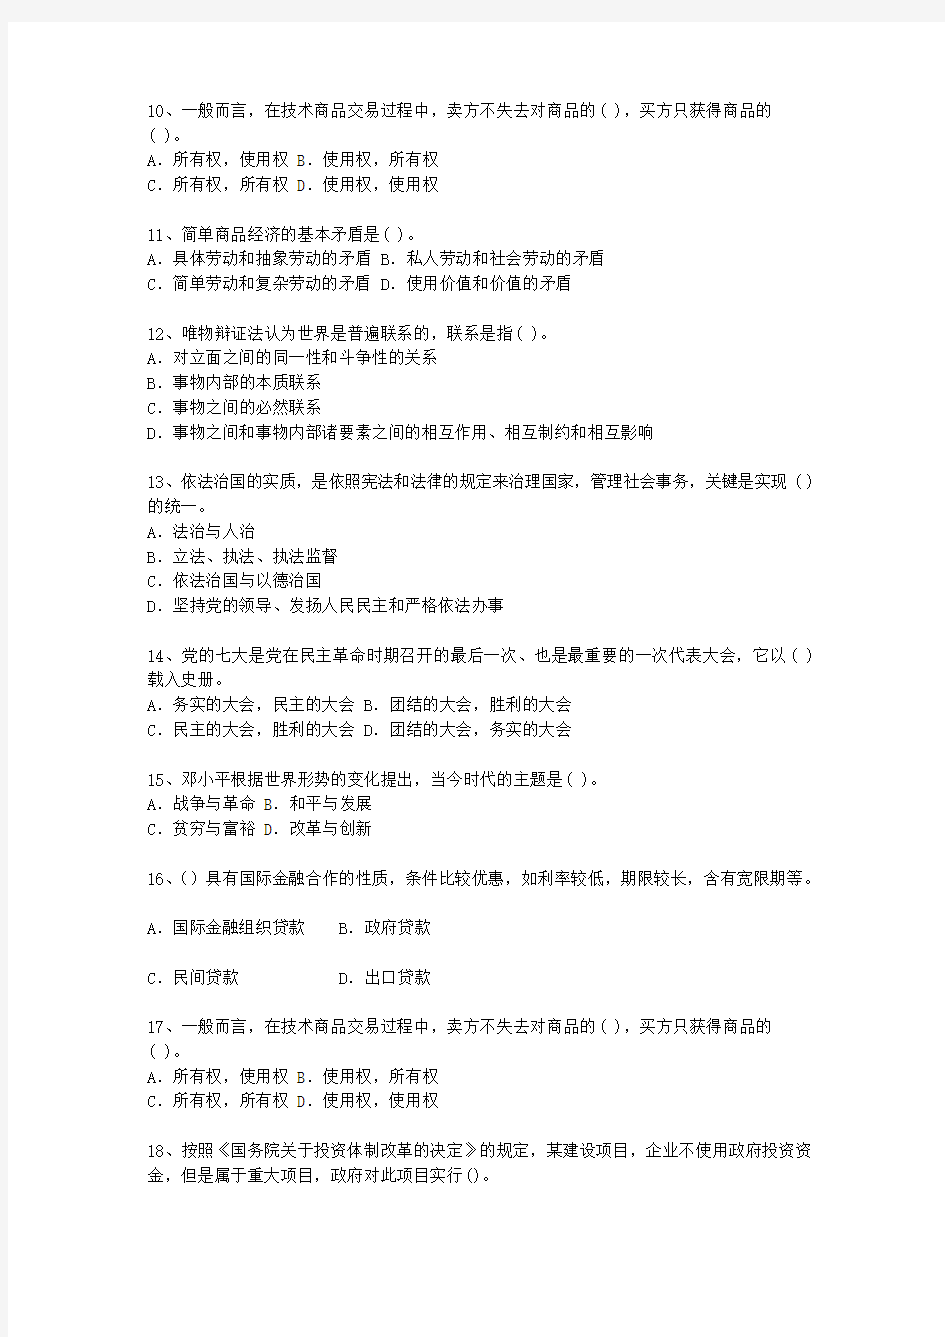 2014浙江省公开选拔领导干部面试最新考试试题库(完整版)